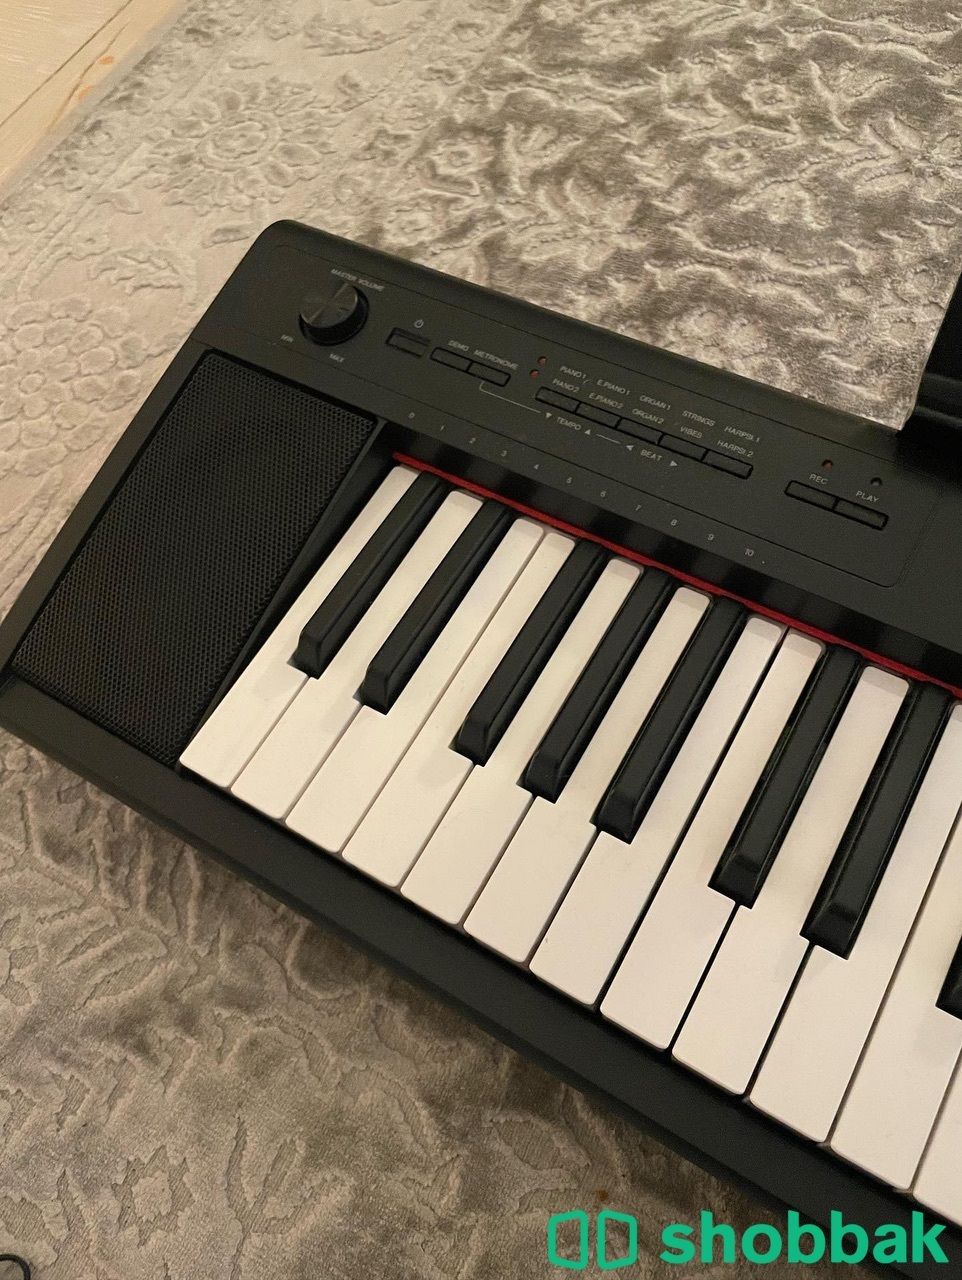 بيانو يماها جديد للبيع Shobbak Saudi Arabia